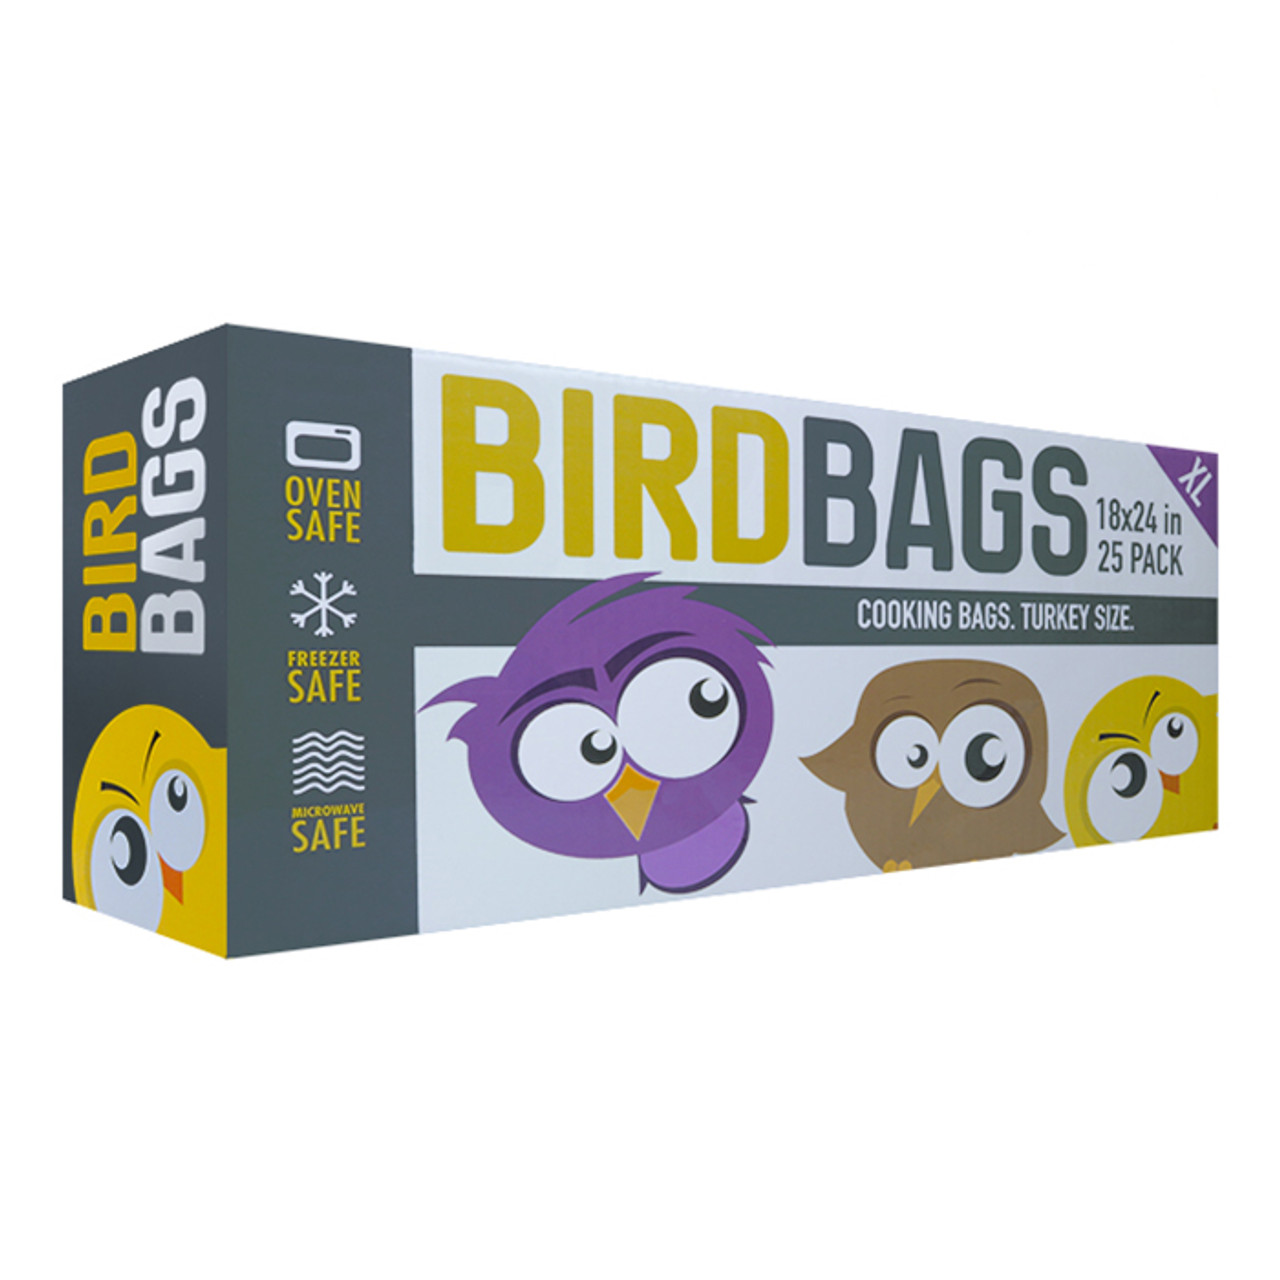 BirdBags Turkey Bag (18x24 25/